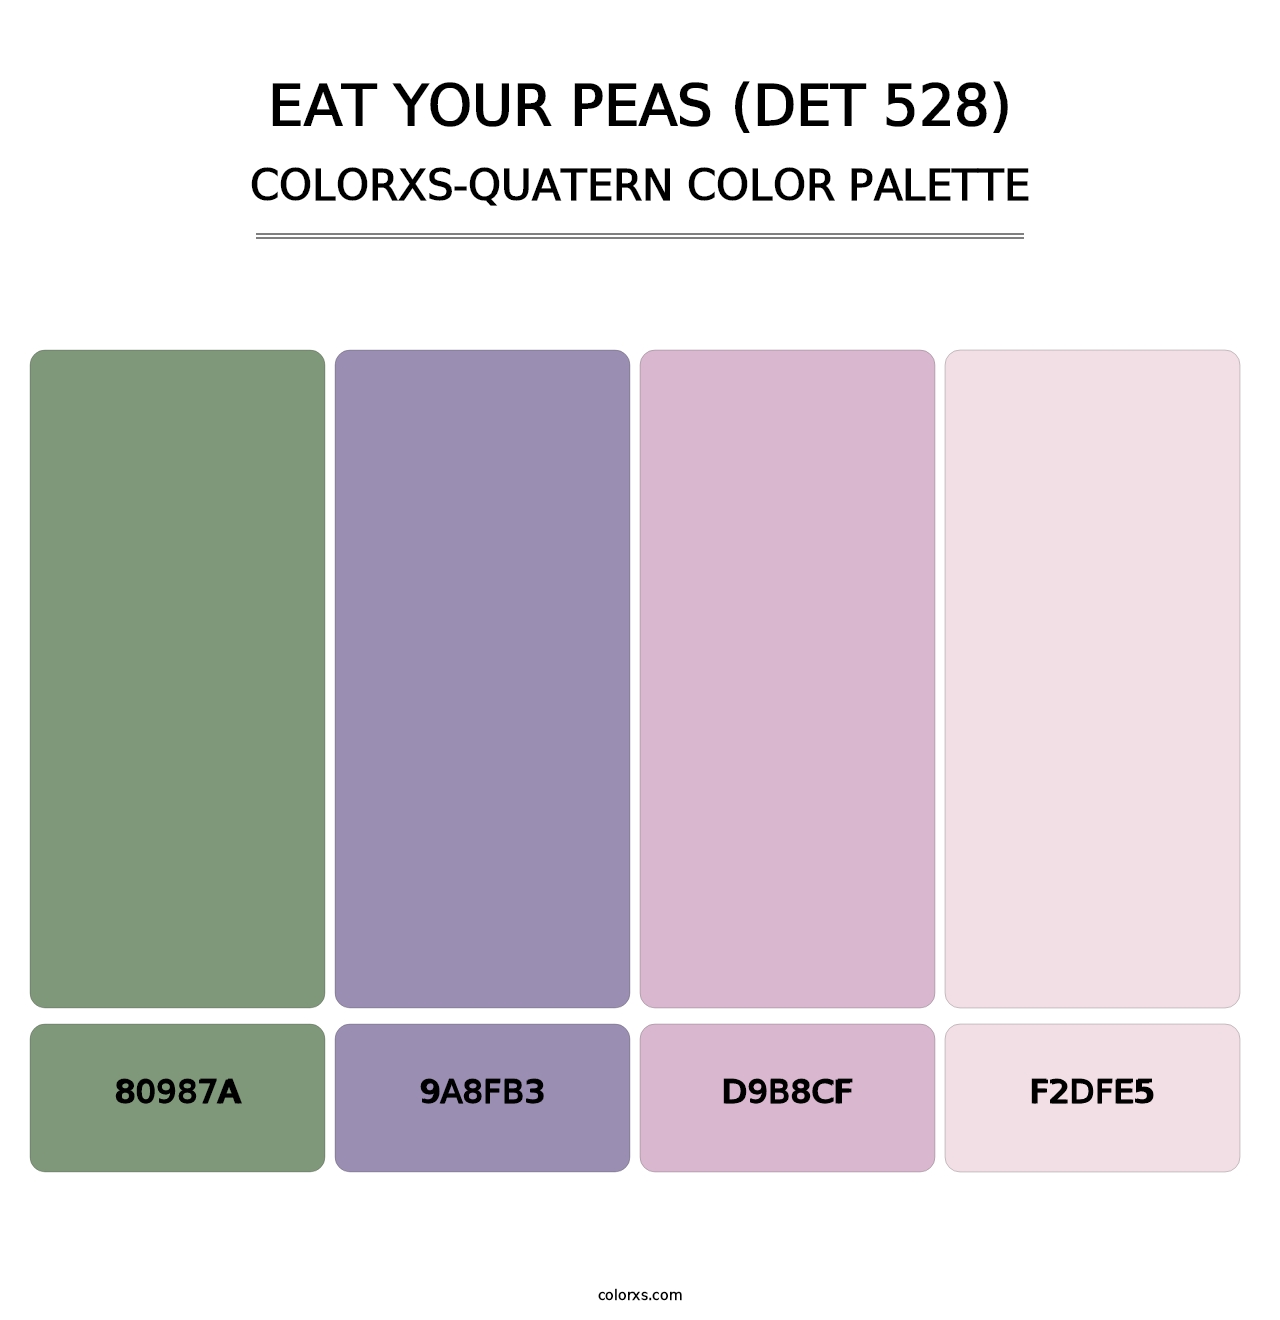 Eat Your Peas (DET 528) - Colorxs Quatern Palette